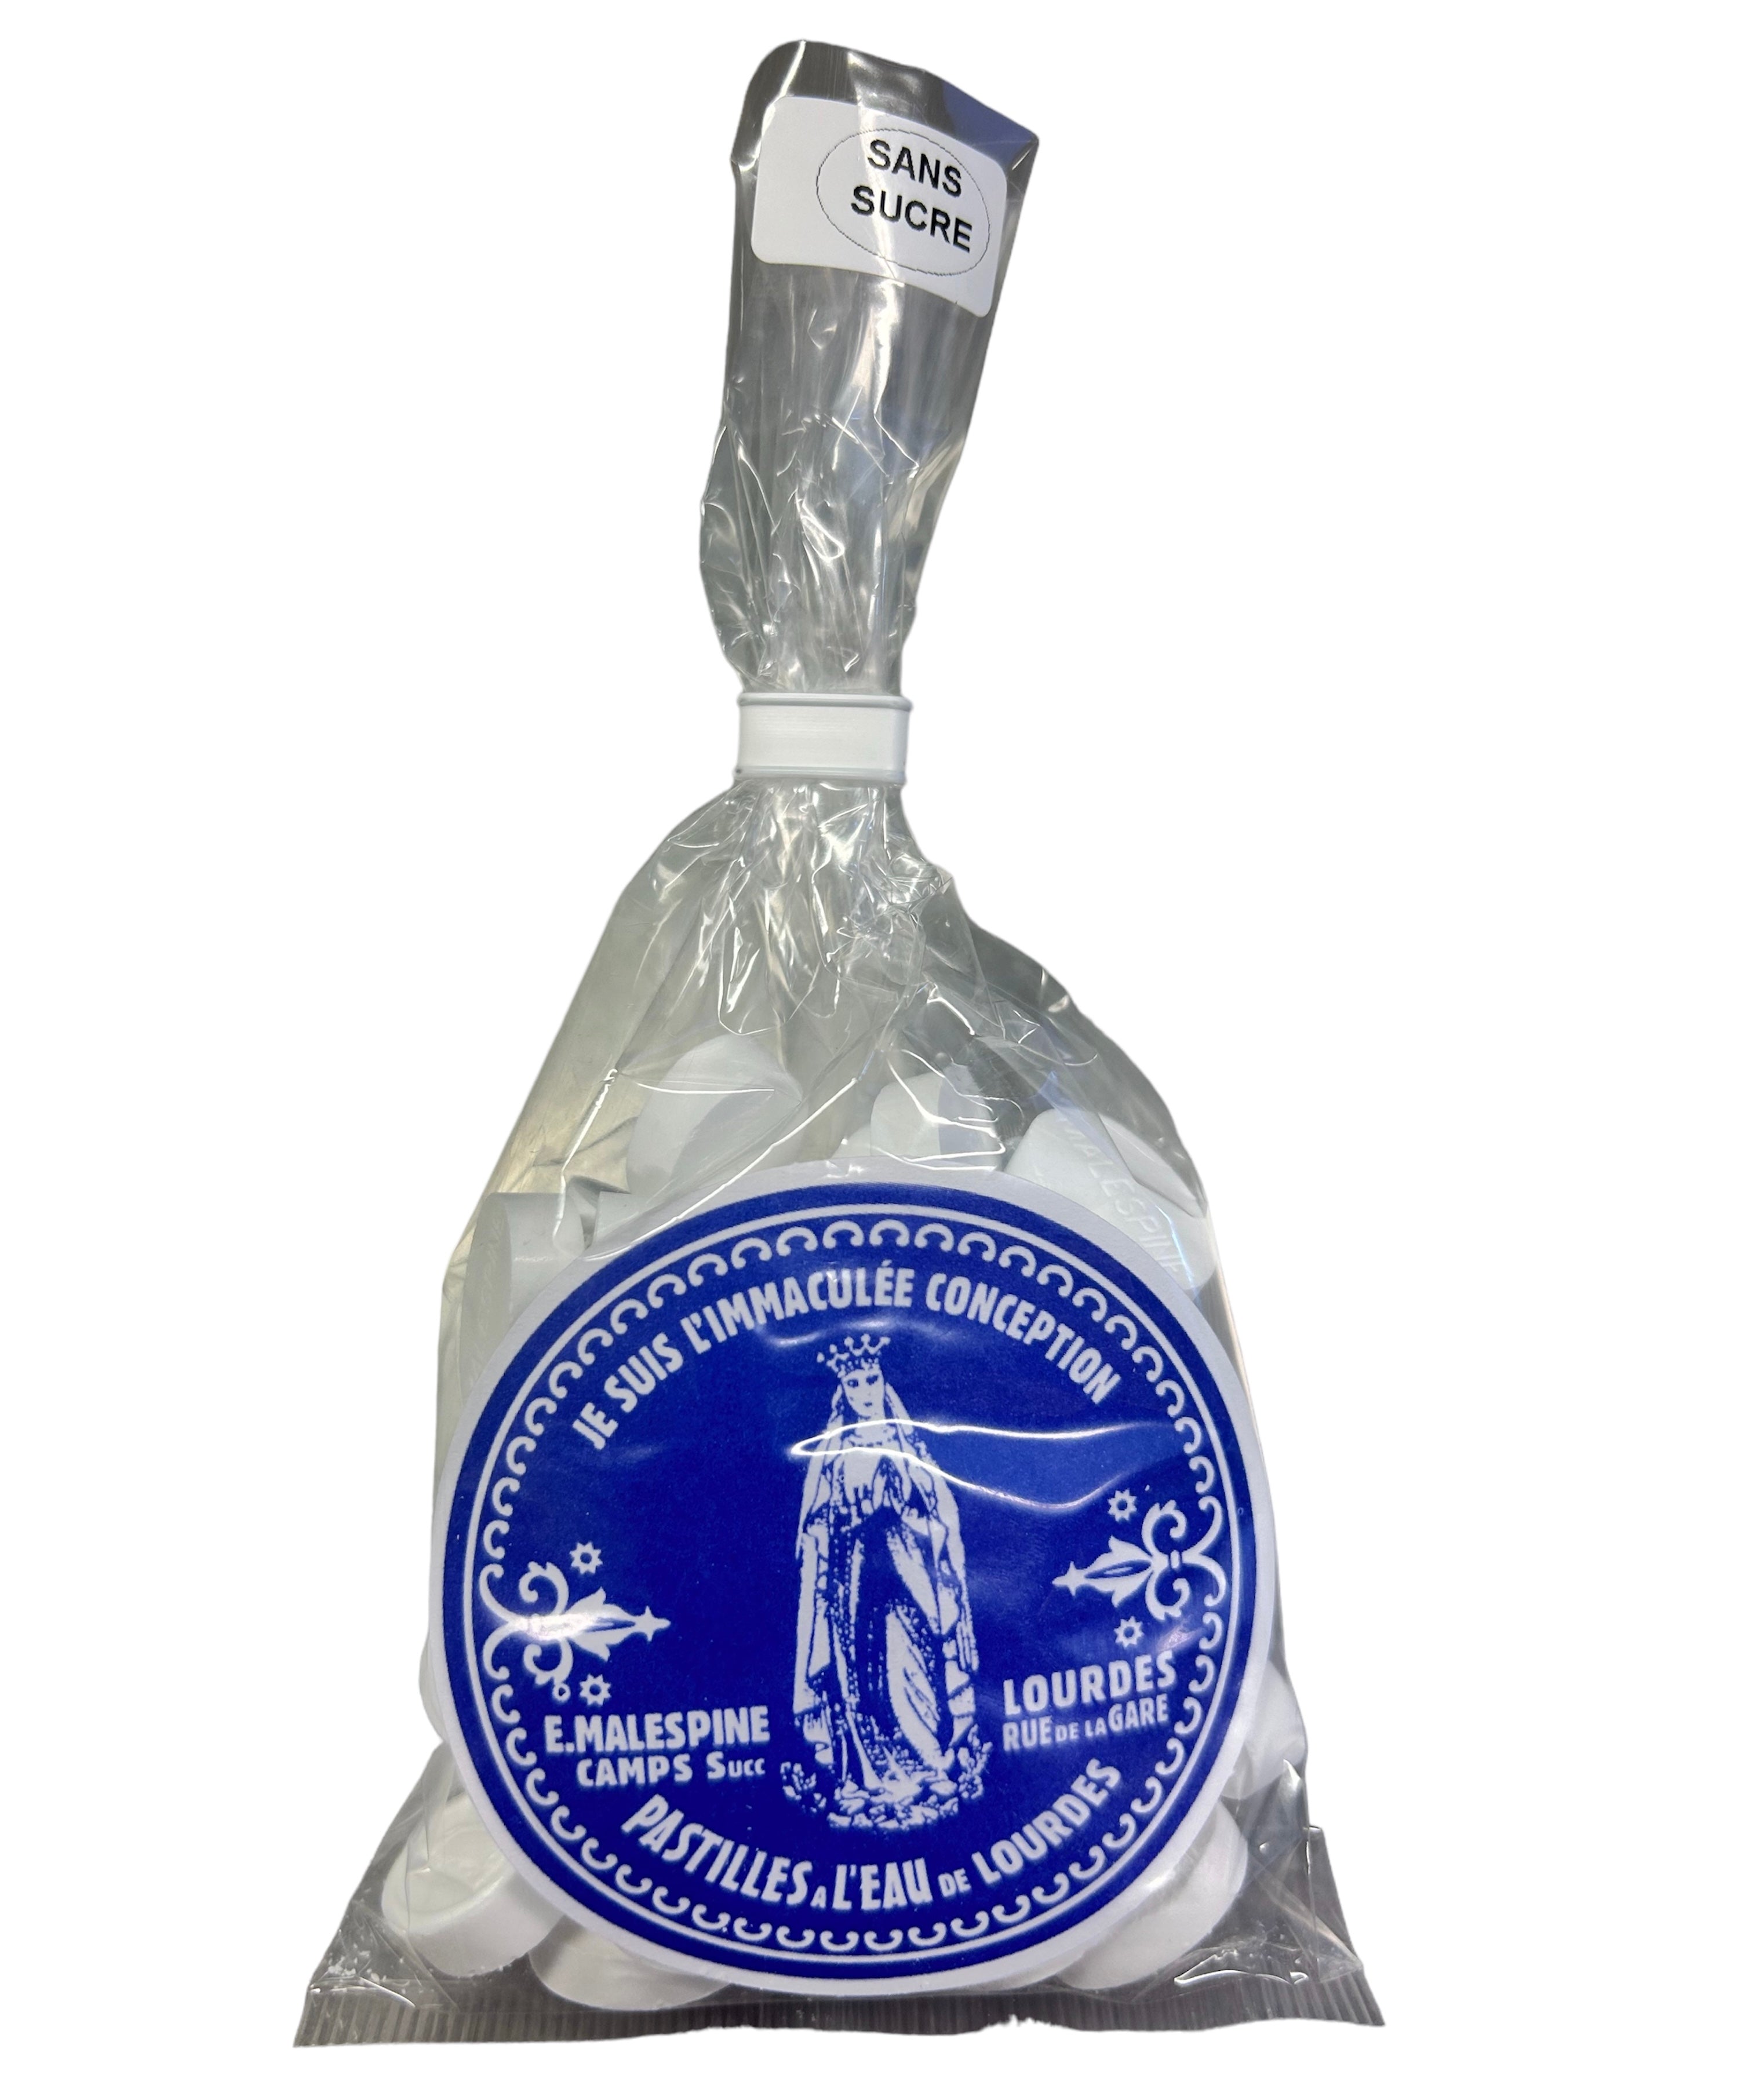 Sachet de pastilles Malespine® à l'eau de Lourdes,130 gr, sans sucre, saveur menthe